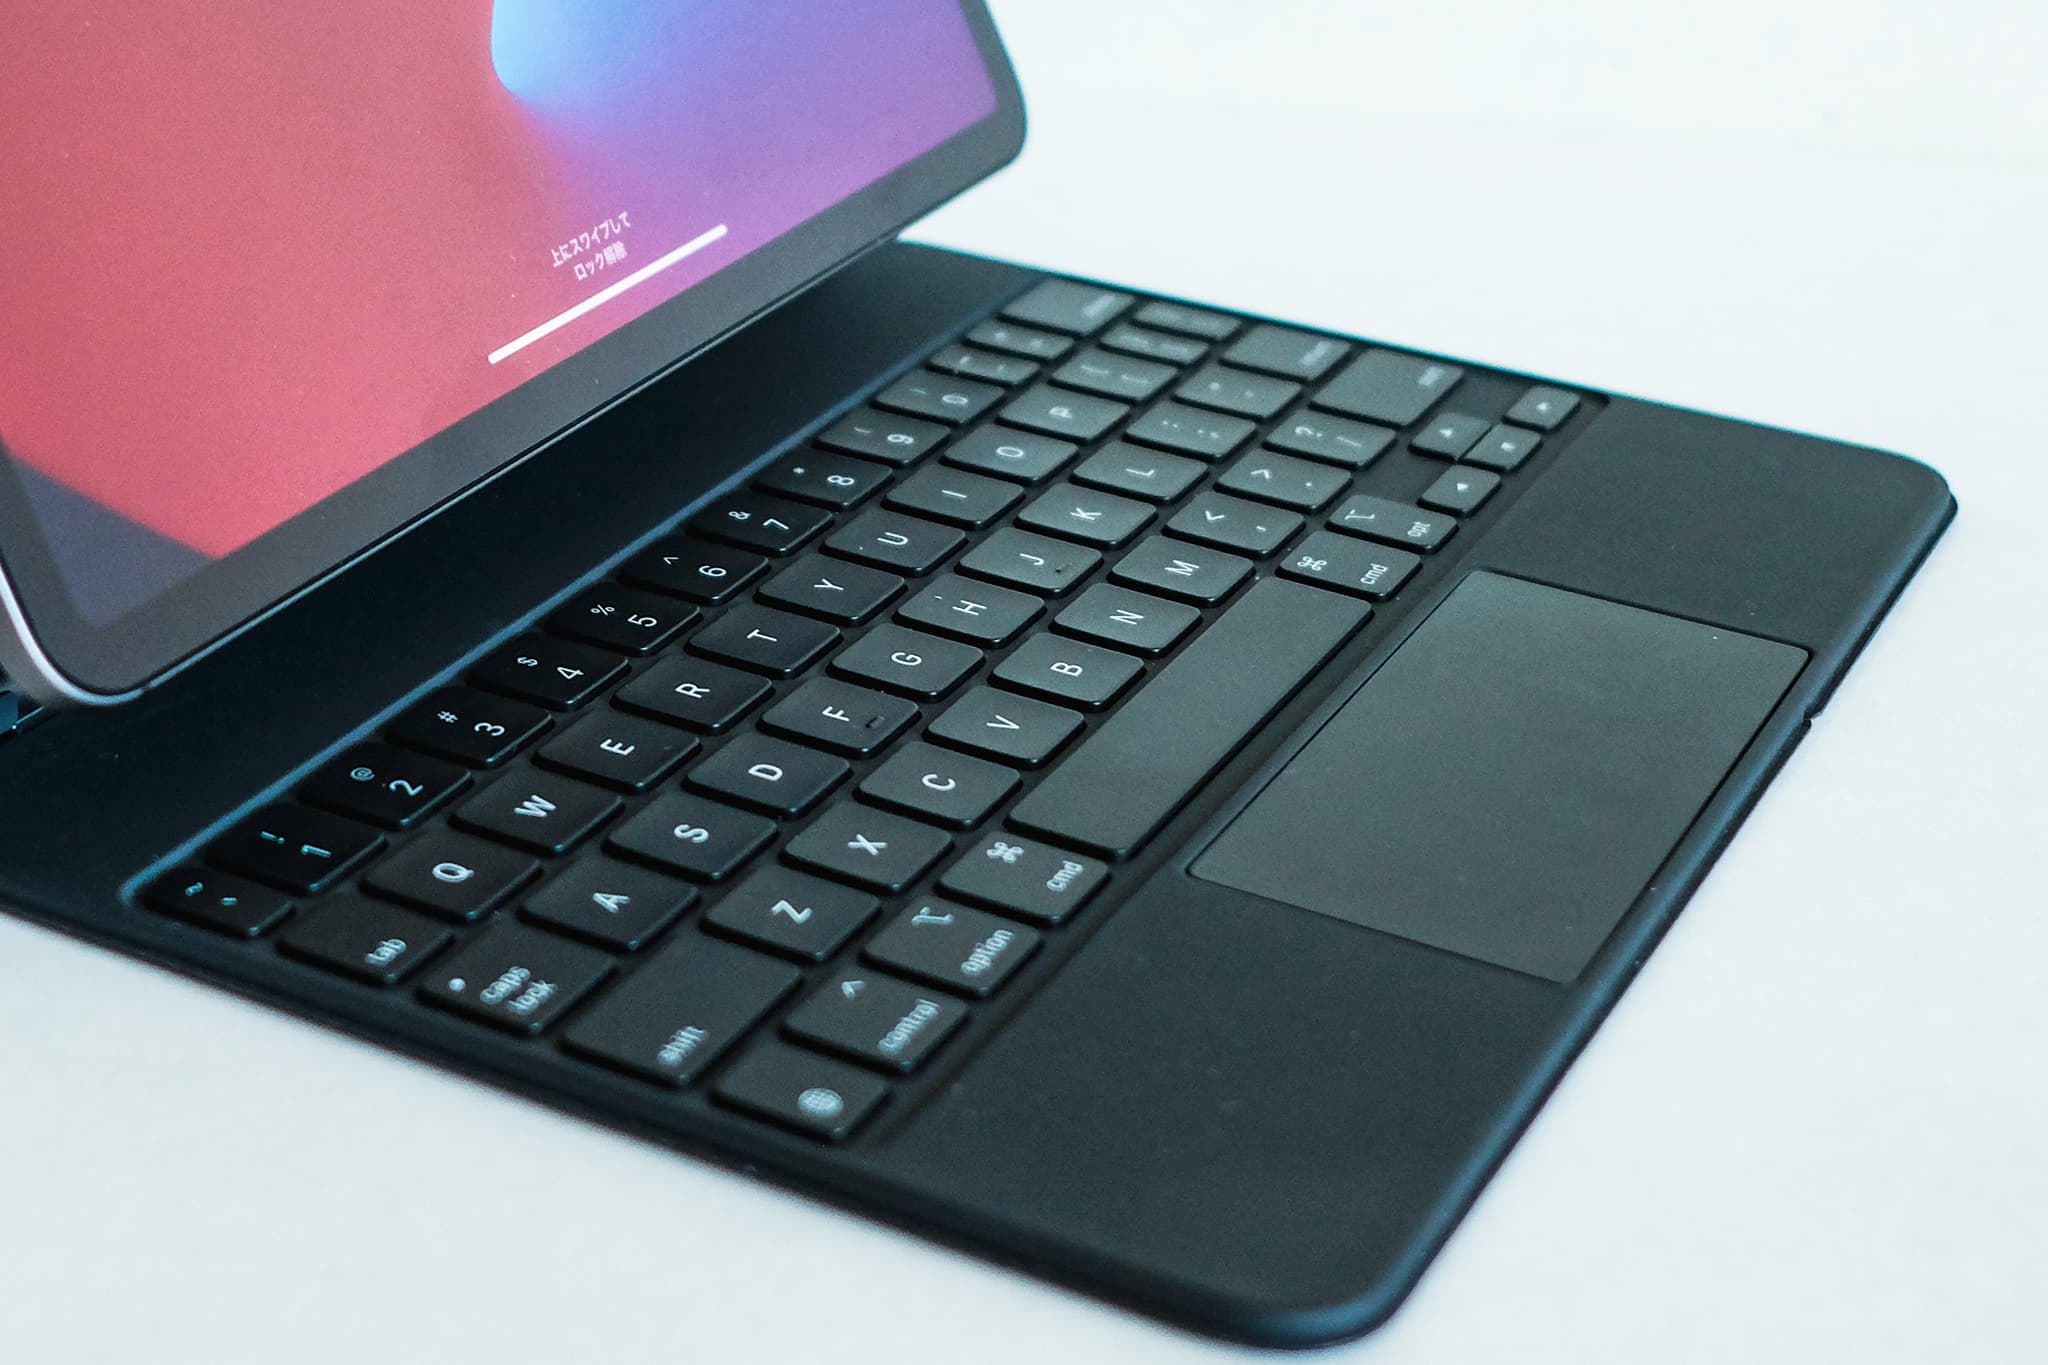 iPadで快適なトラックパッド付きキーボードを選択する難しさ　iPadでトラックパッド付きキーボードといえばiPad用のMagic Keyboard